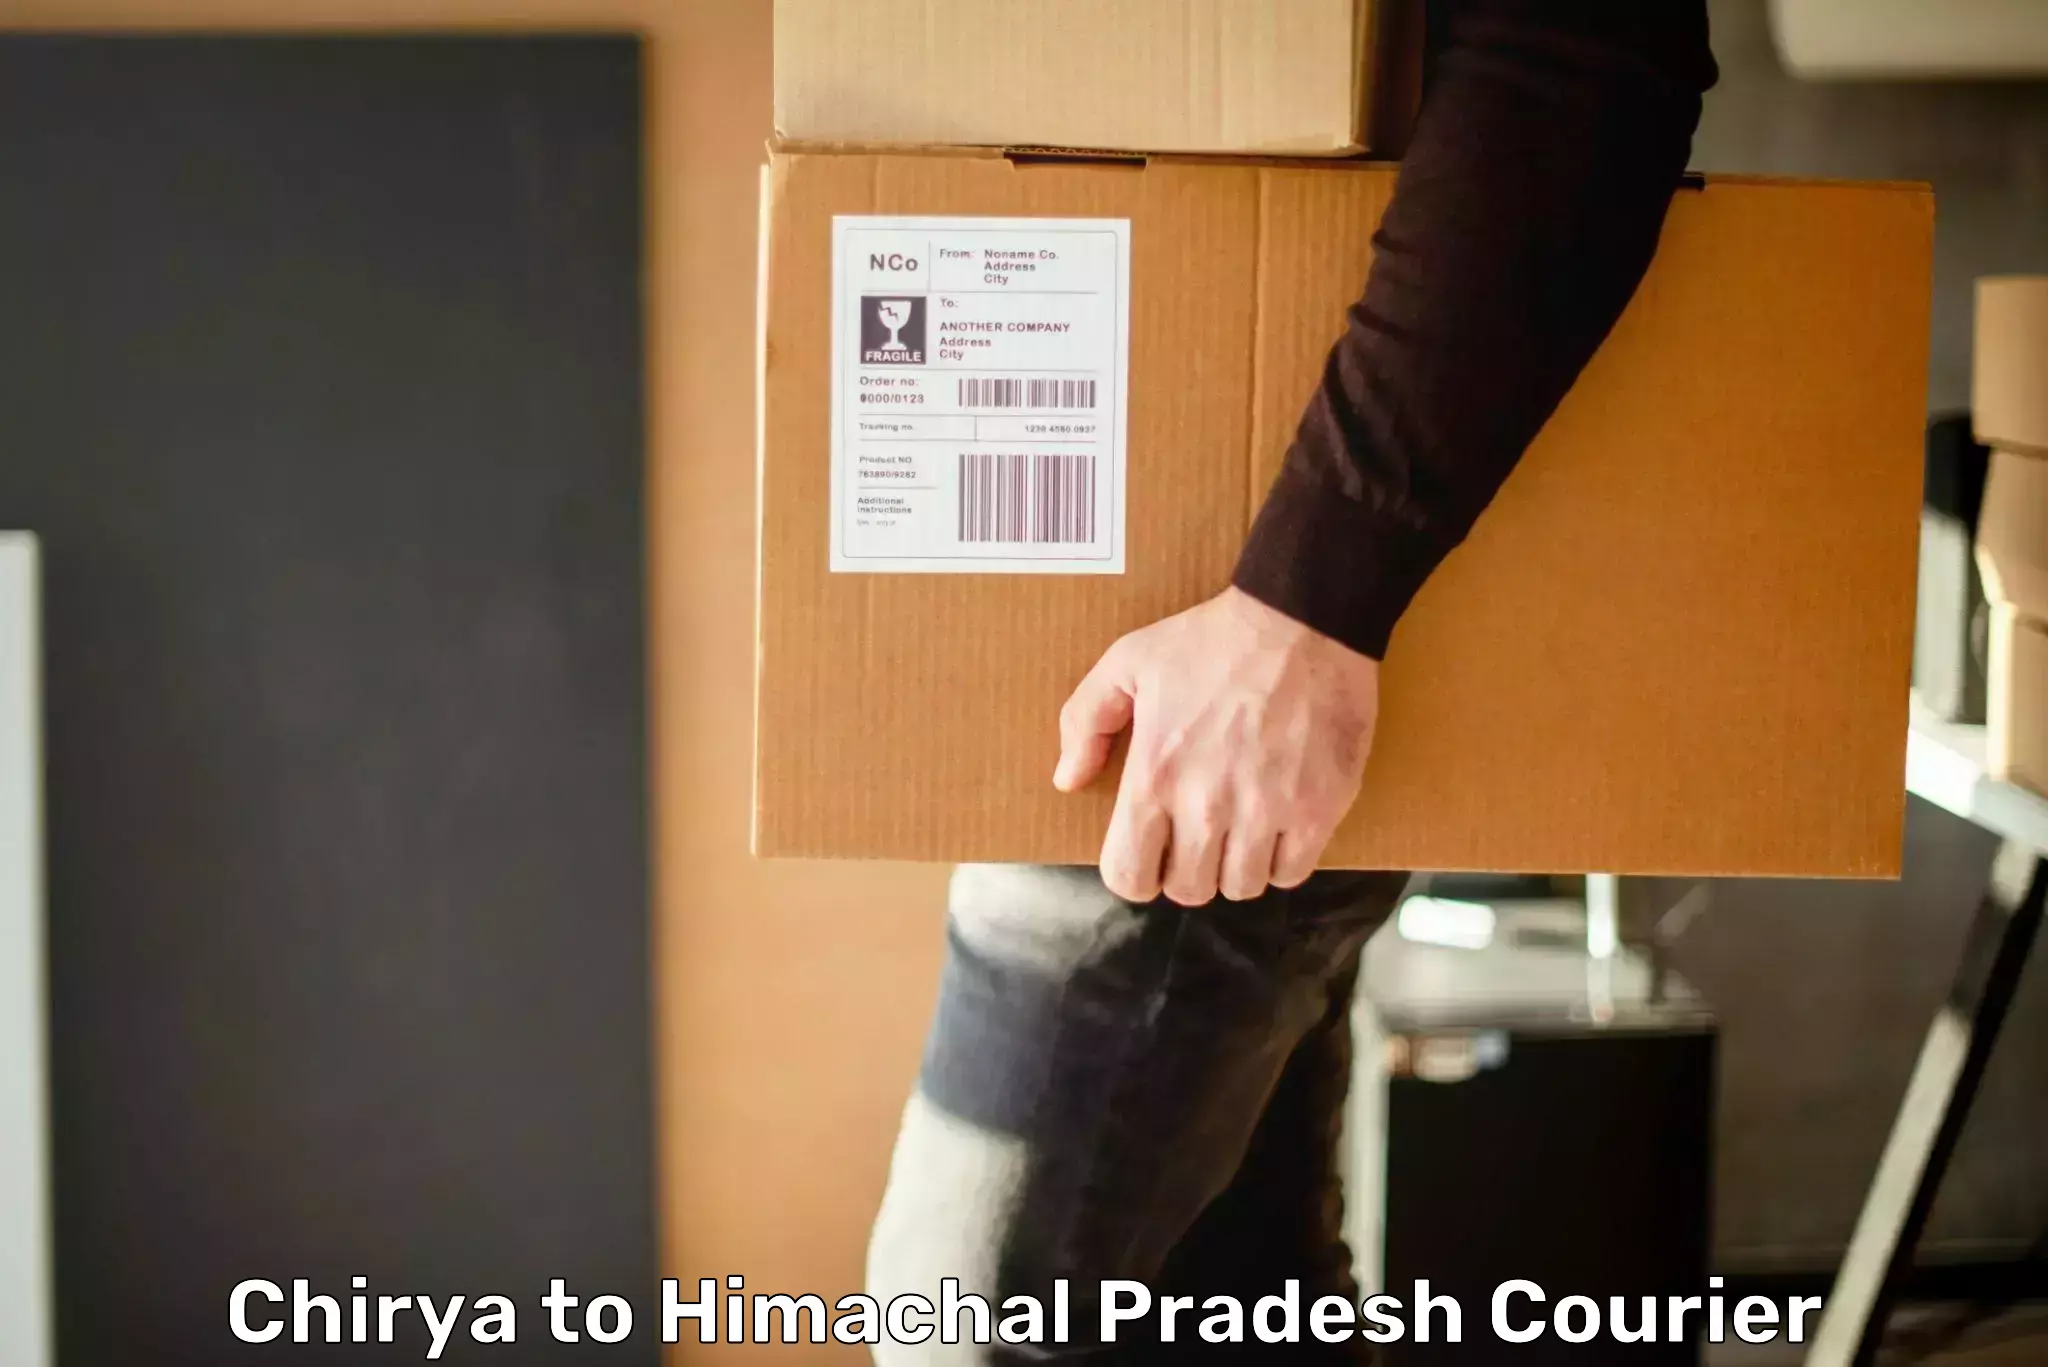 Package delivery network Chirya to Una Himachal Pradesh